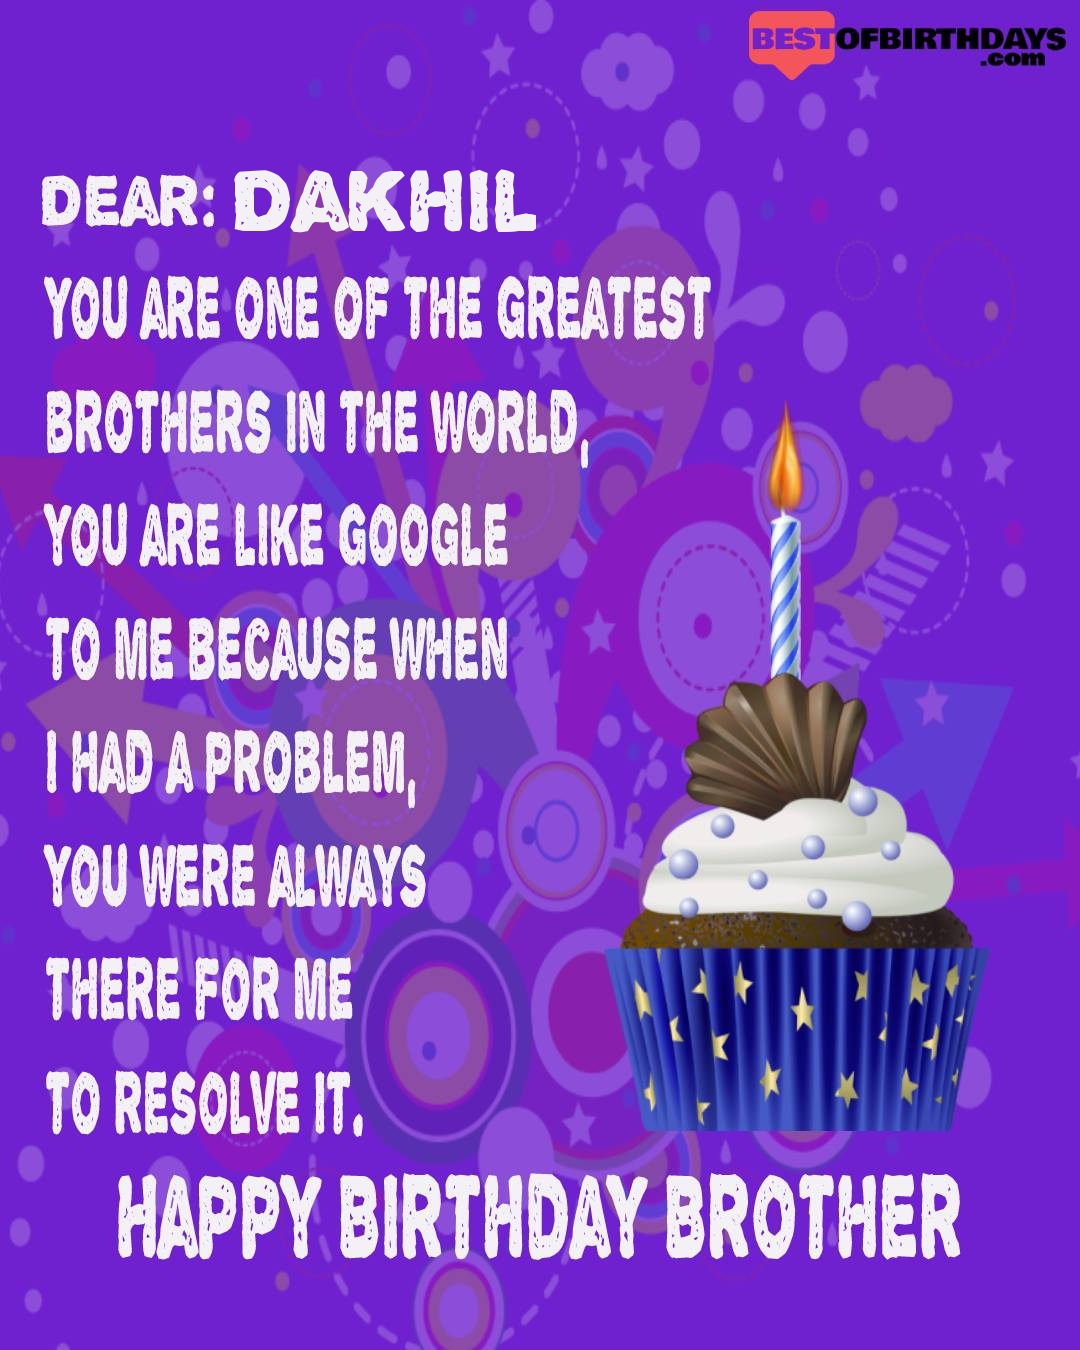 Happy birthday dakhil bhai brother bro